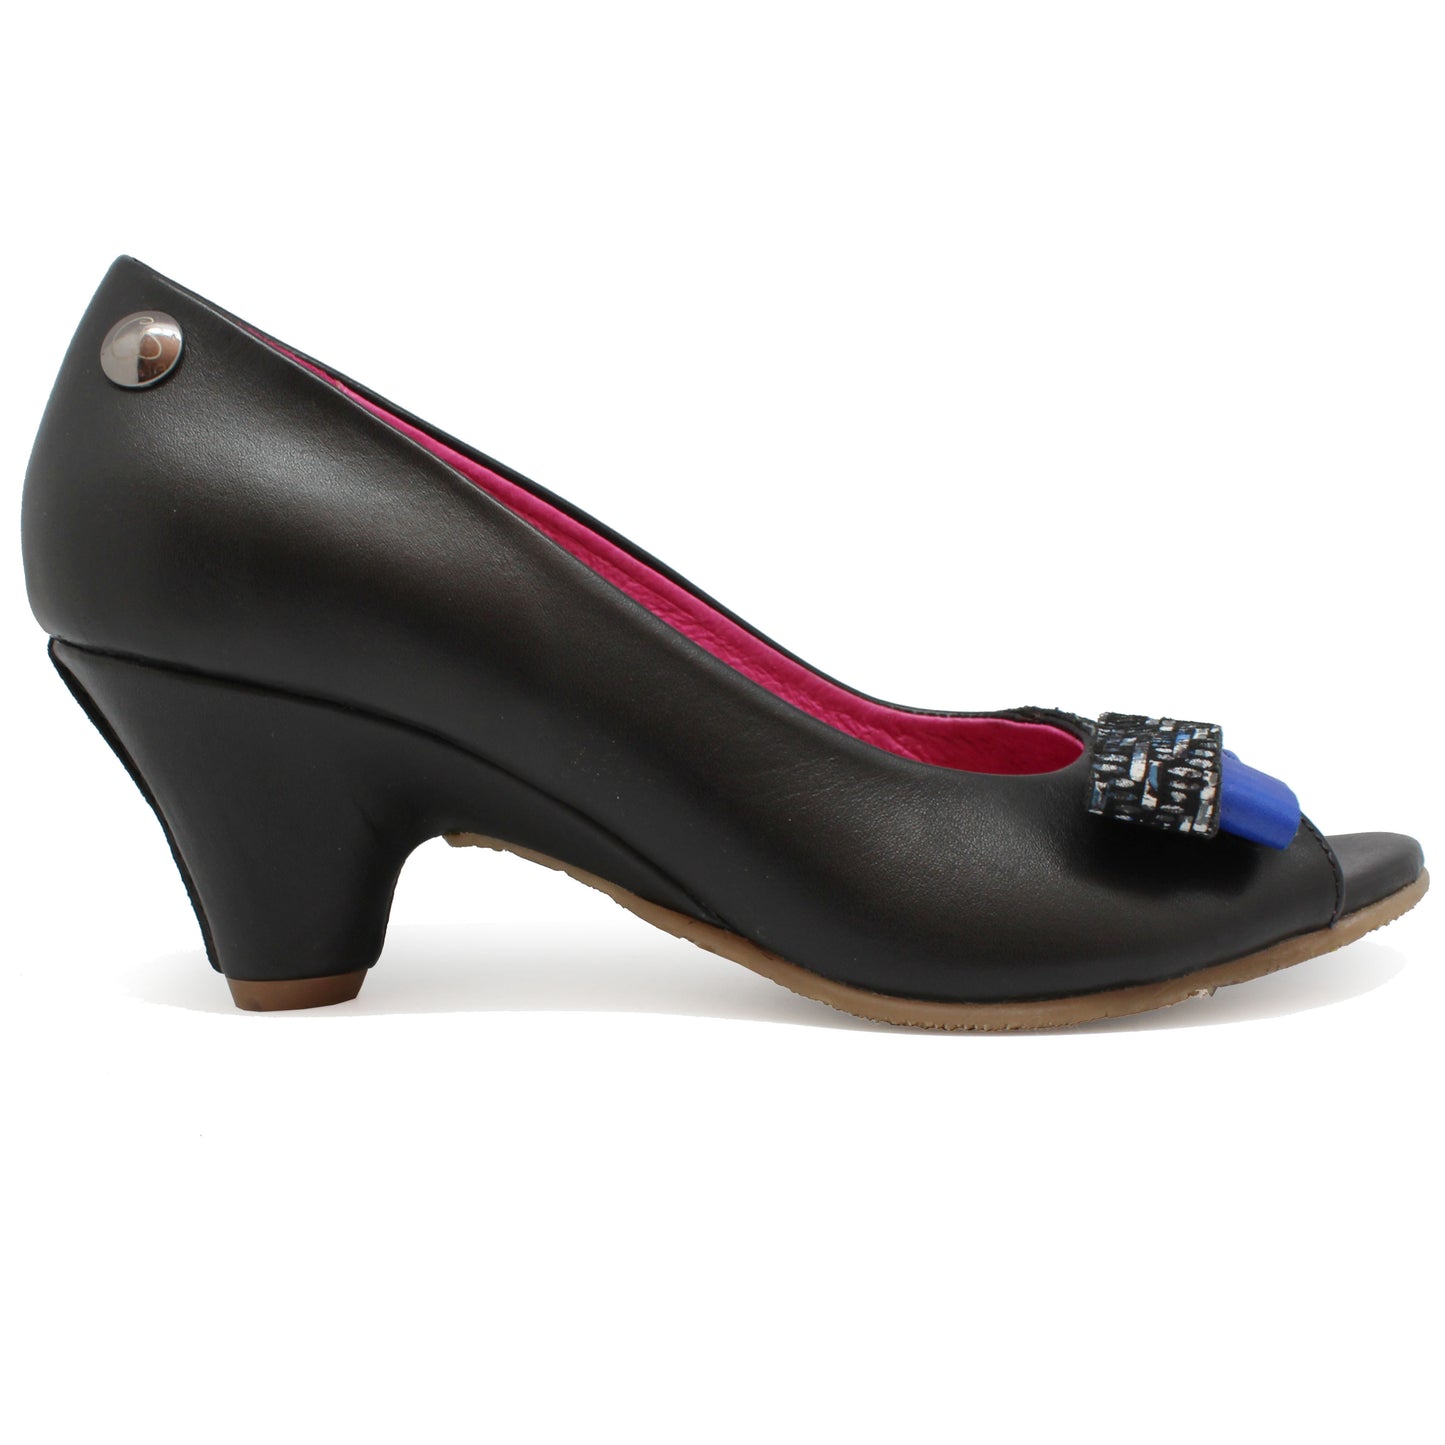 Frise - Black Blue open toe shoe- sizes 36 and 41 left!